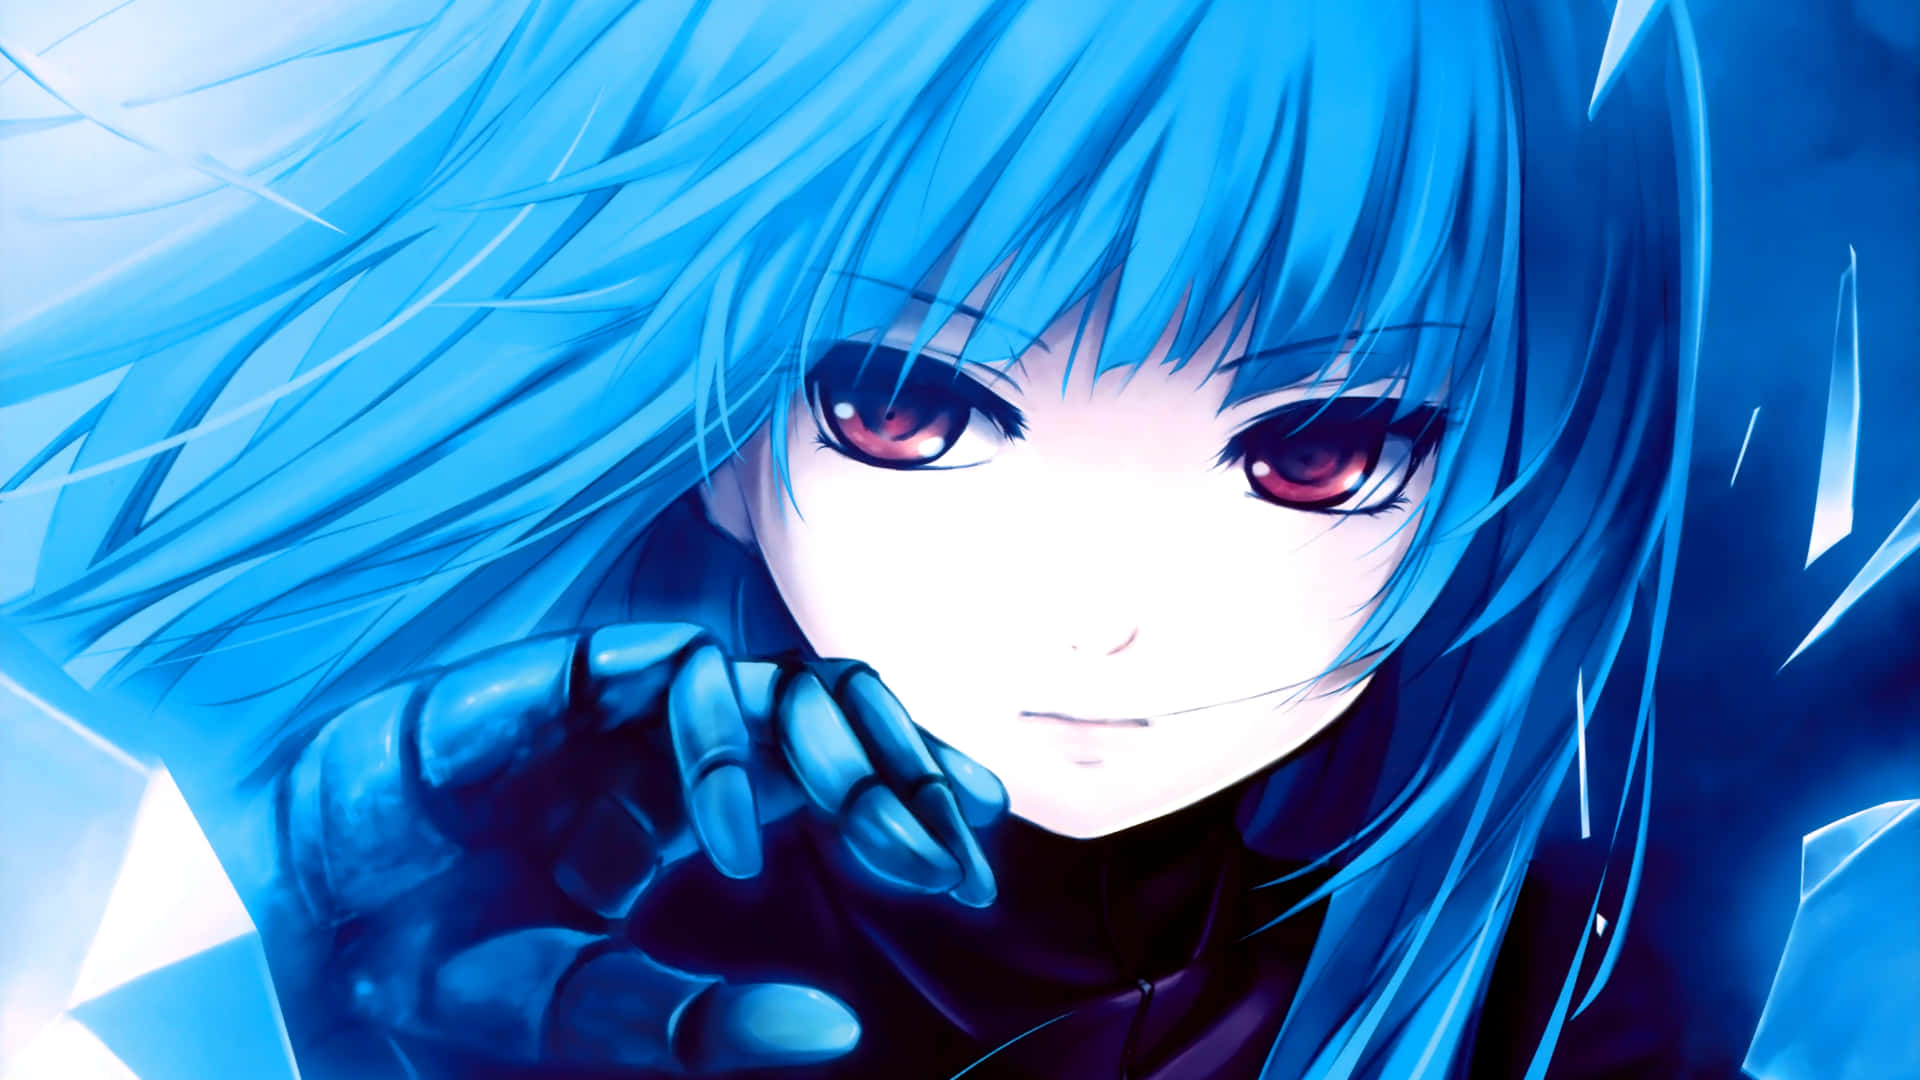 Cool Anime Girl Blue Hai Black Eyes Wallpaper